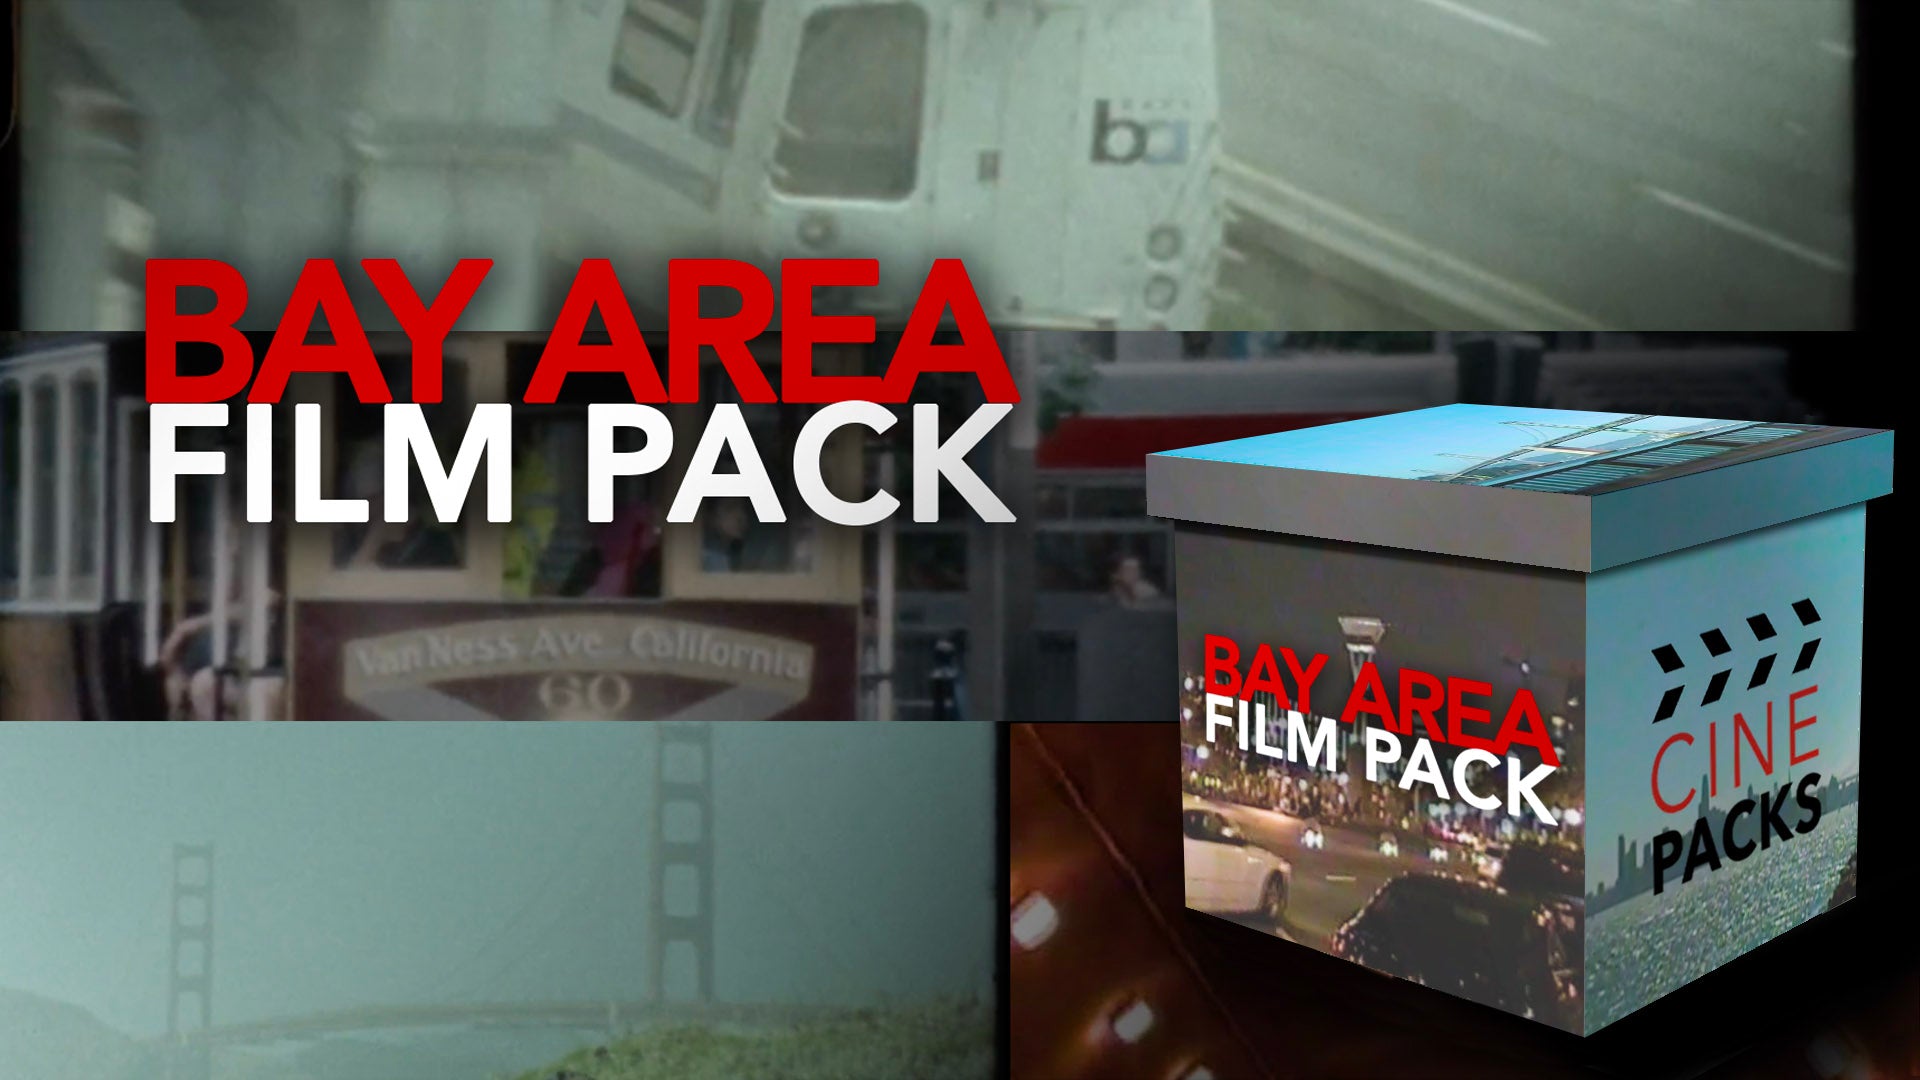 Bay Area Film Pack - CinePacks